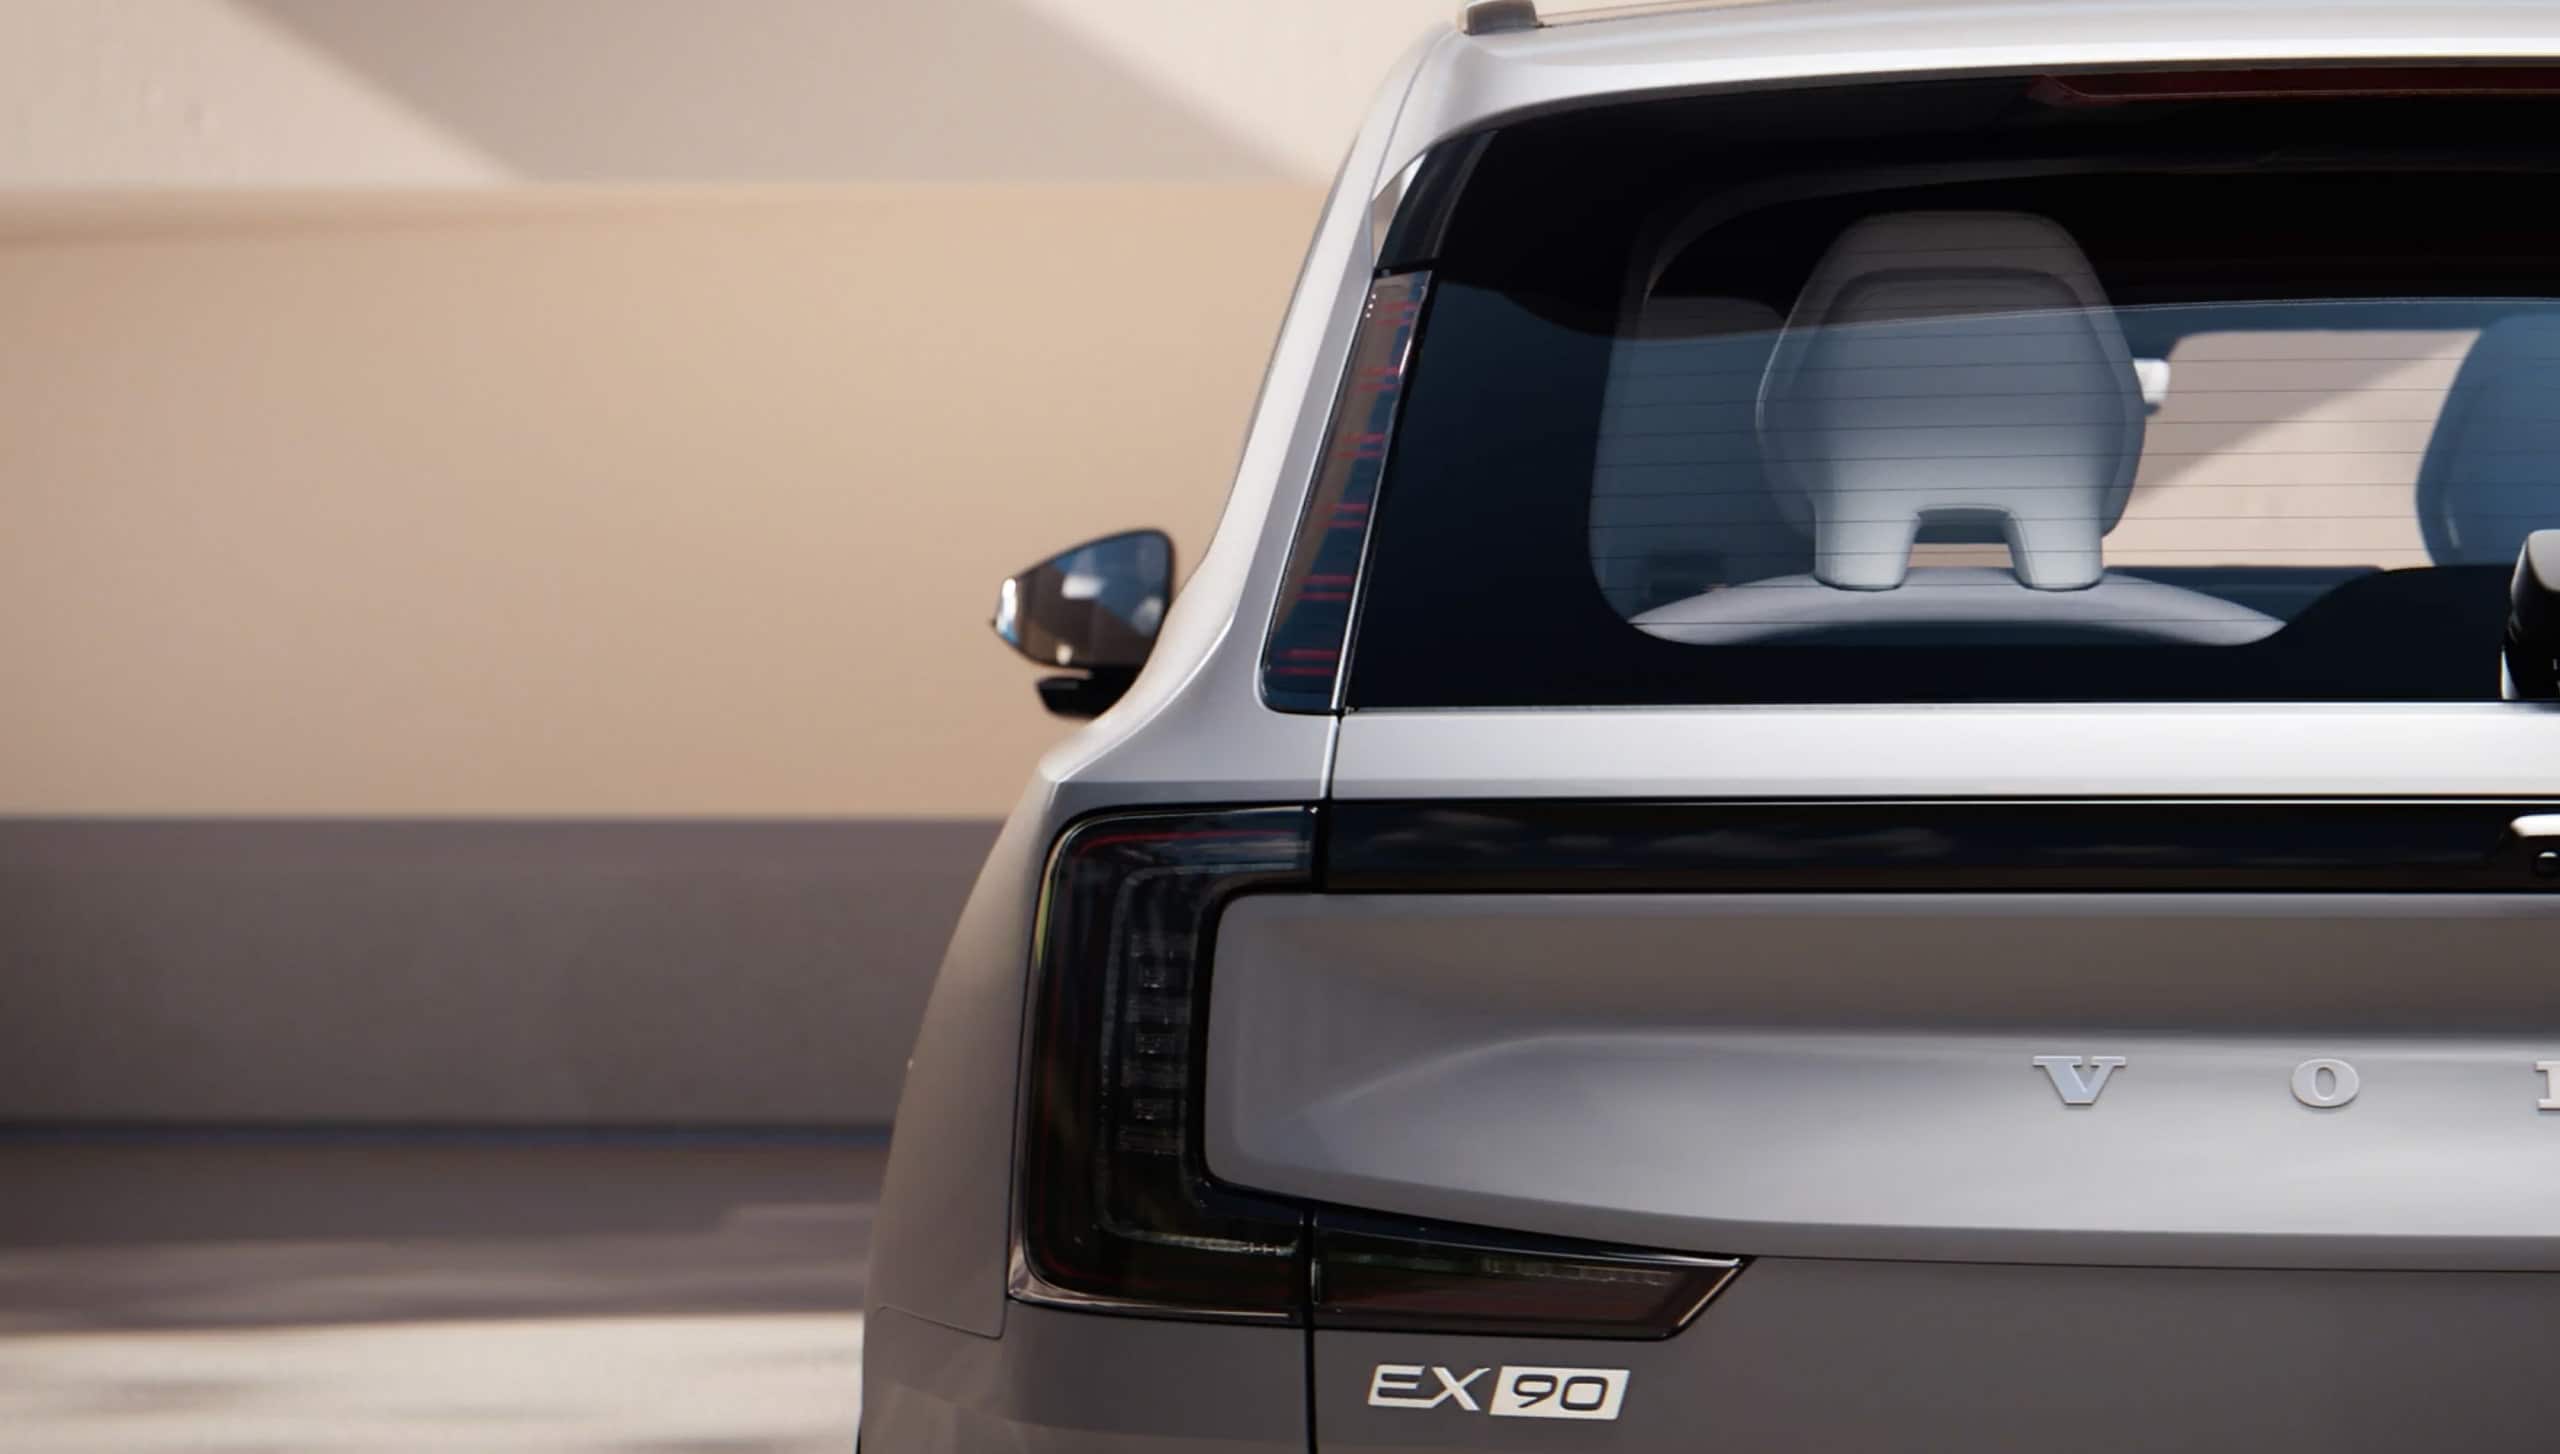 Nieuw gestroomlijnd silhouet van de Volvo EX90